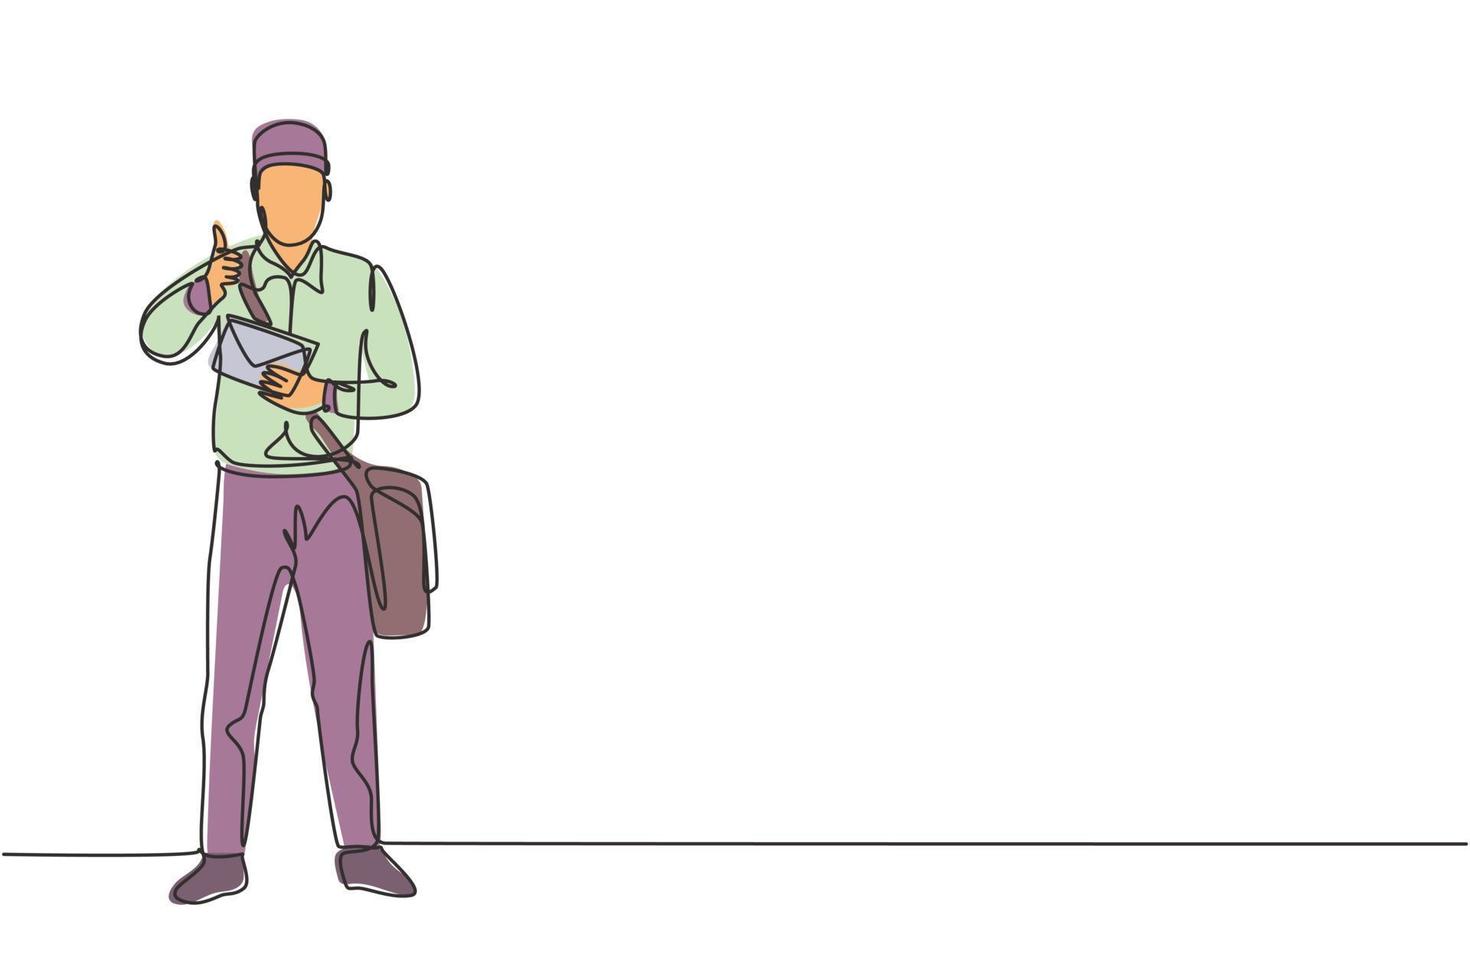 enda enradsteckning av brevbärare som står i en hatt, väska, uniform, håller ett kuvert och med en tummen upp gest som levererar post till hemadress. kontinuerlig linje rita design grafisk illustration. vektor